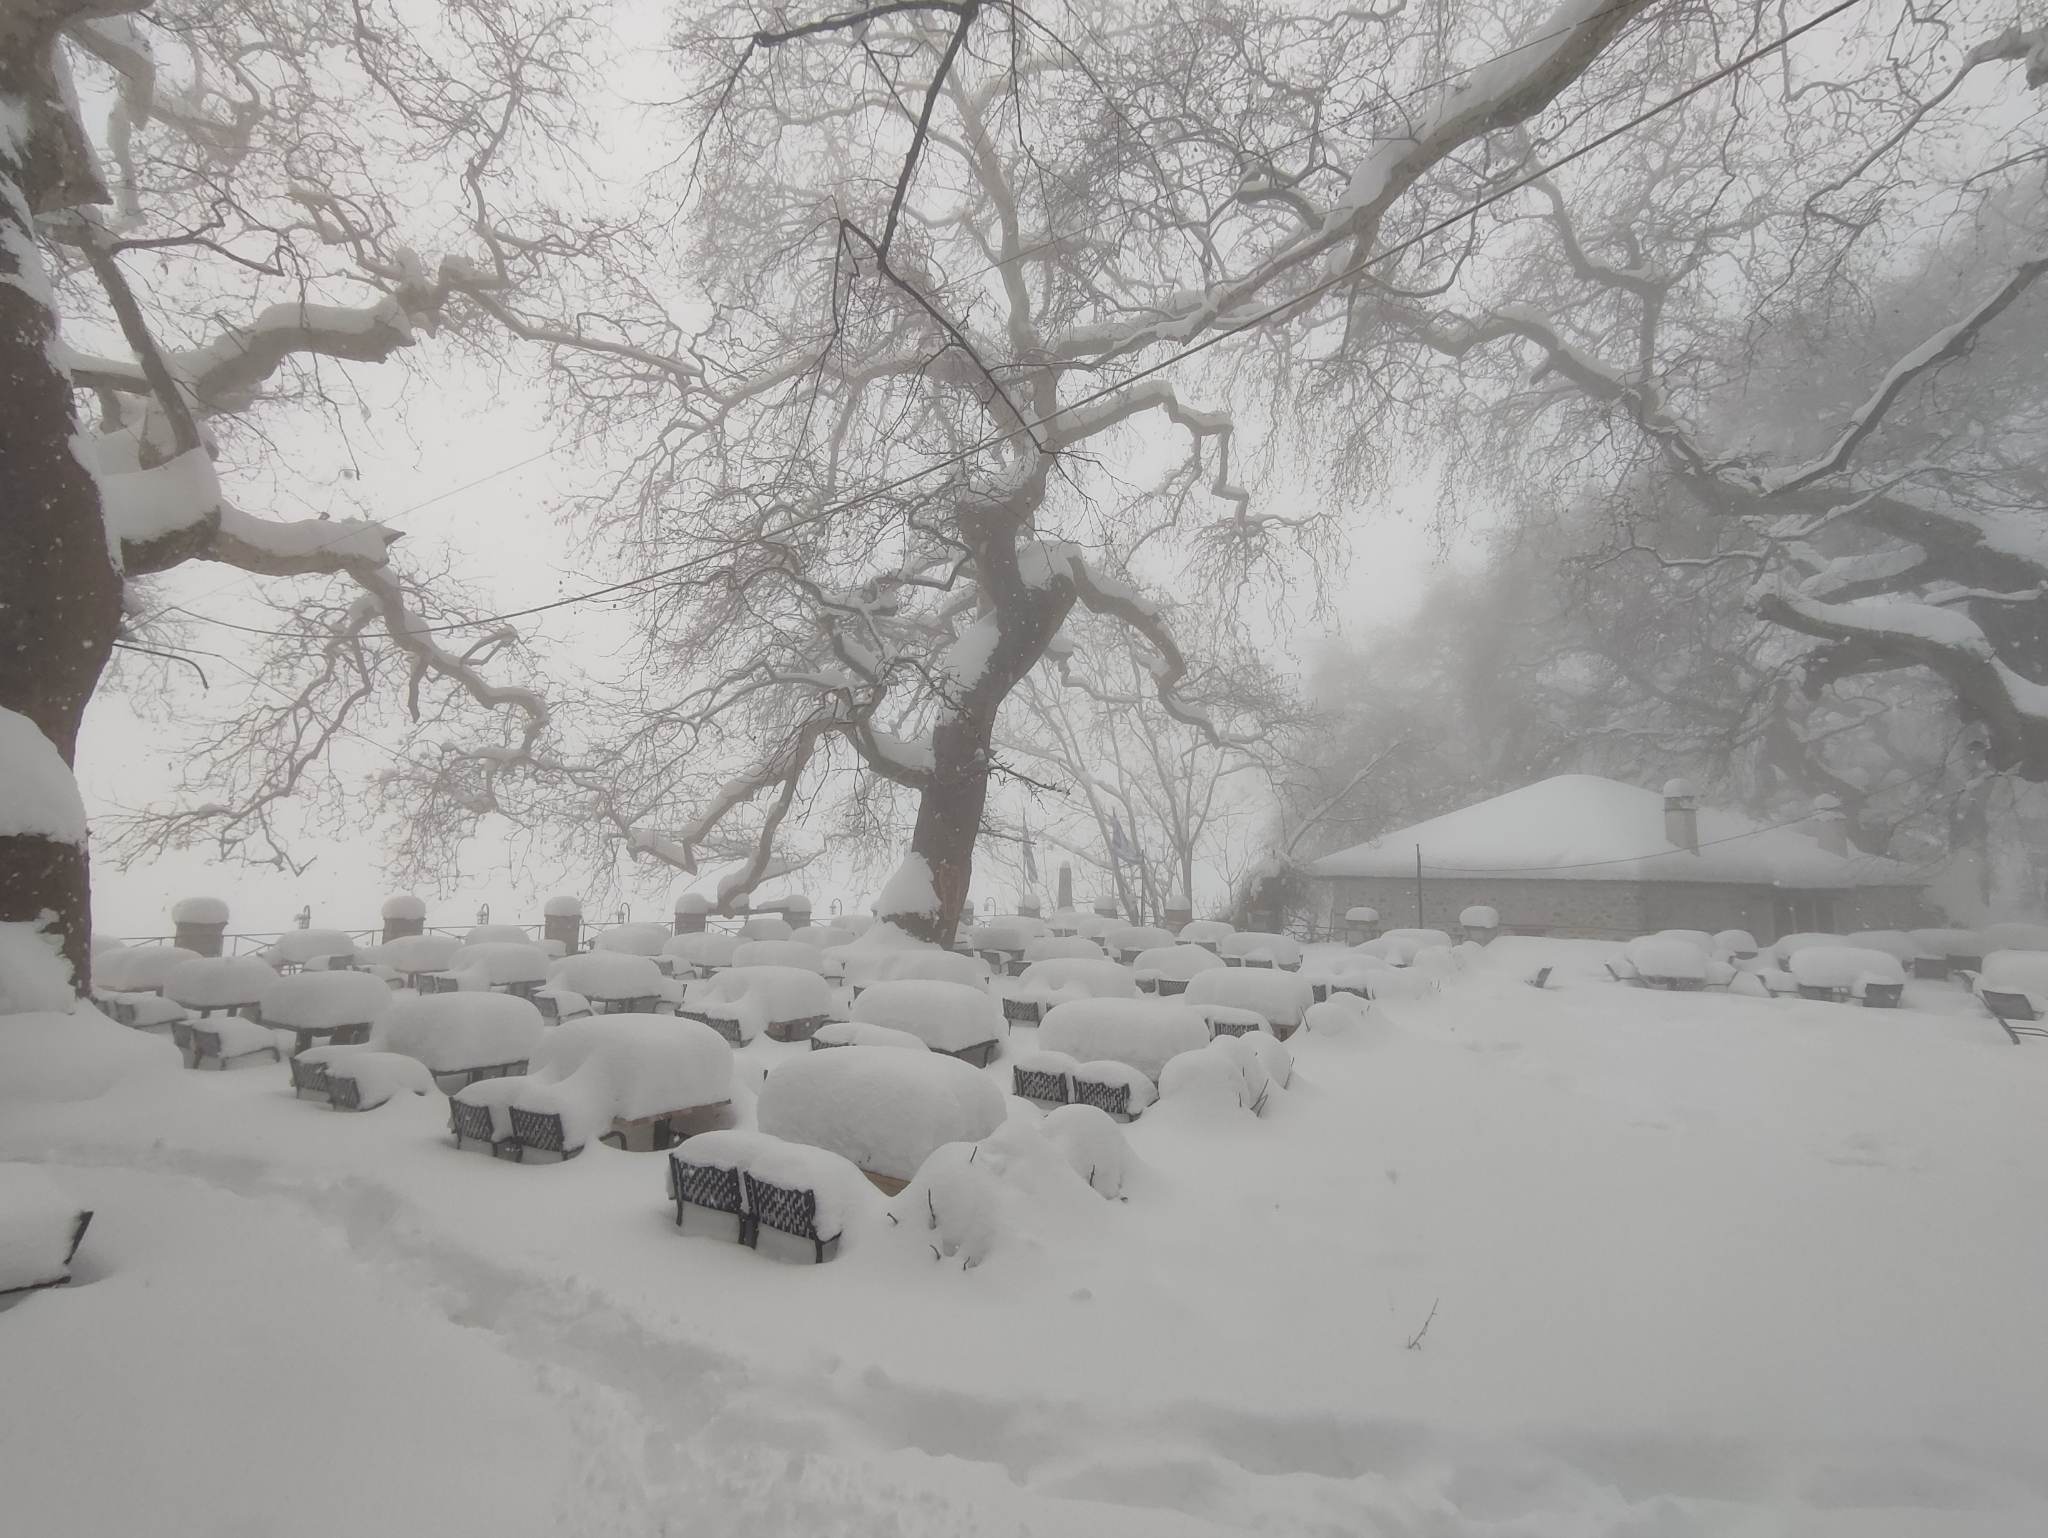 Καιρός – Μακρινίτσα: Ένα μέτρο χιόνι μέσα από 10 εκπληκτικές εικόνες